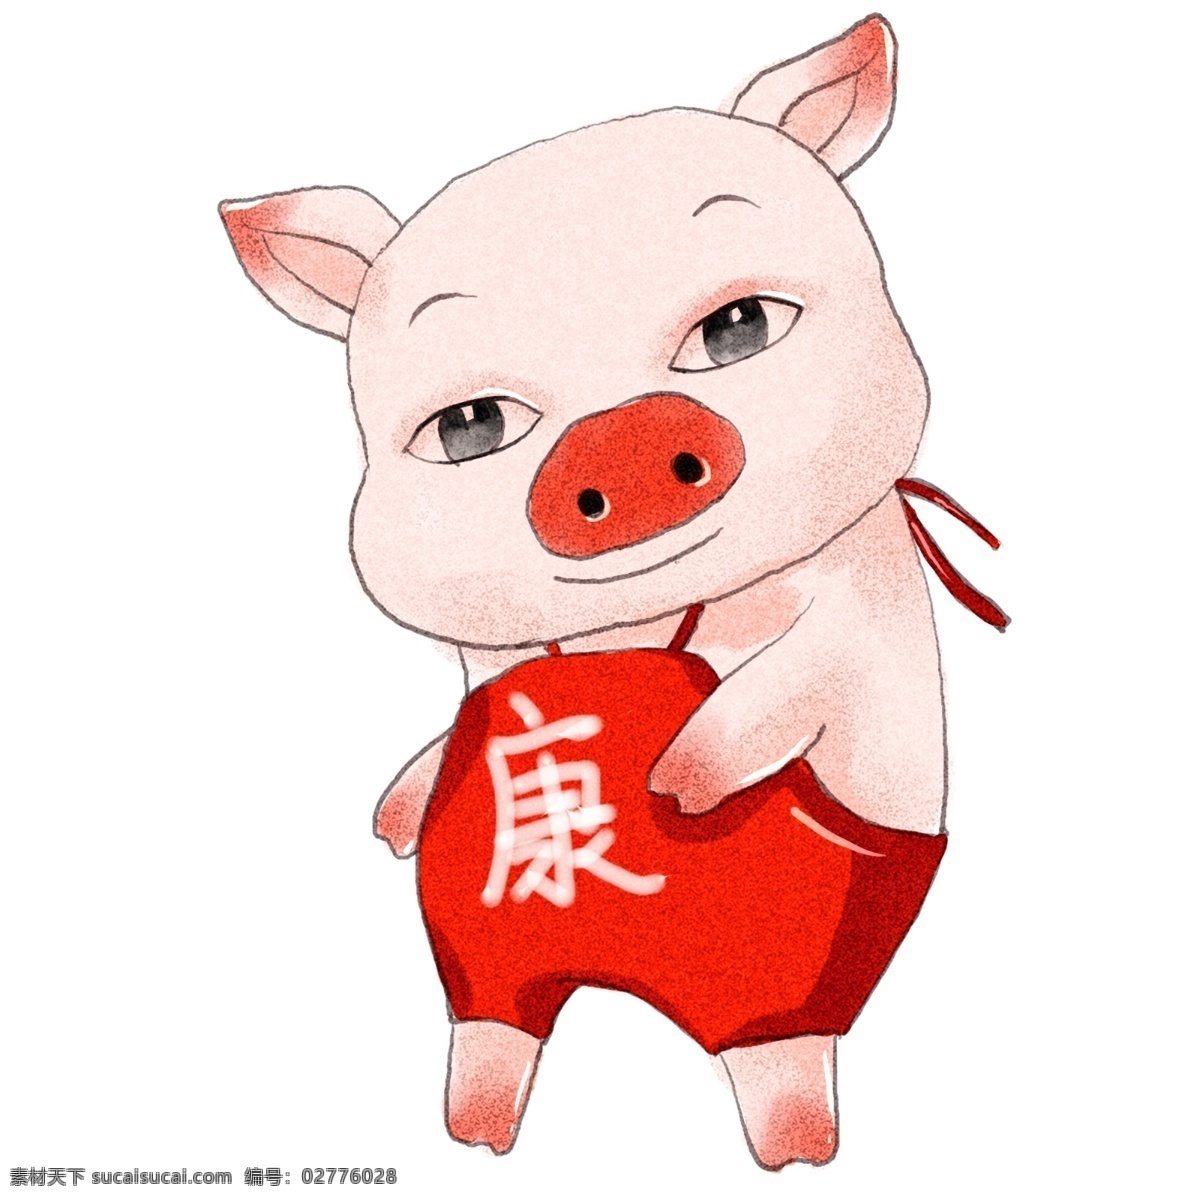 2019 年 生肖 猪 猪年 健 康康 原创 商用 元素 可爱 生肖猪 手绘 板绘 水彩